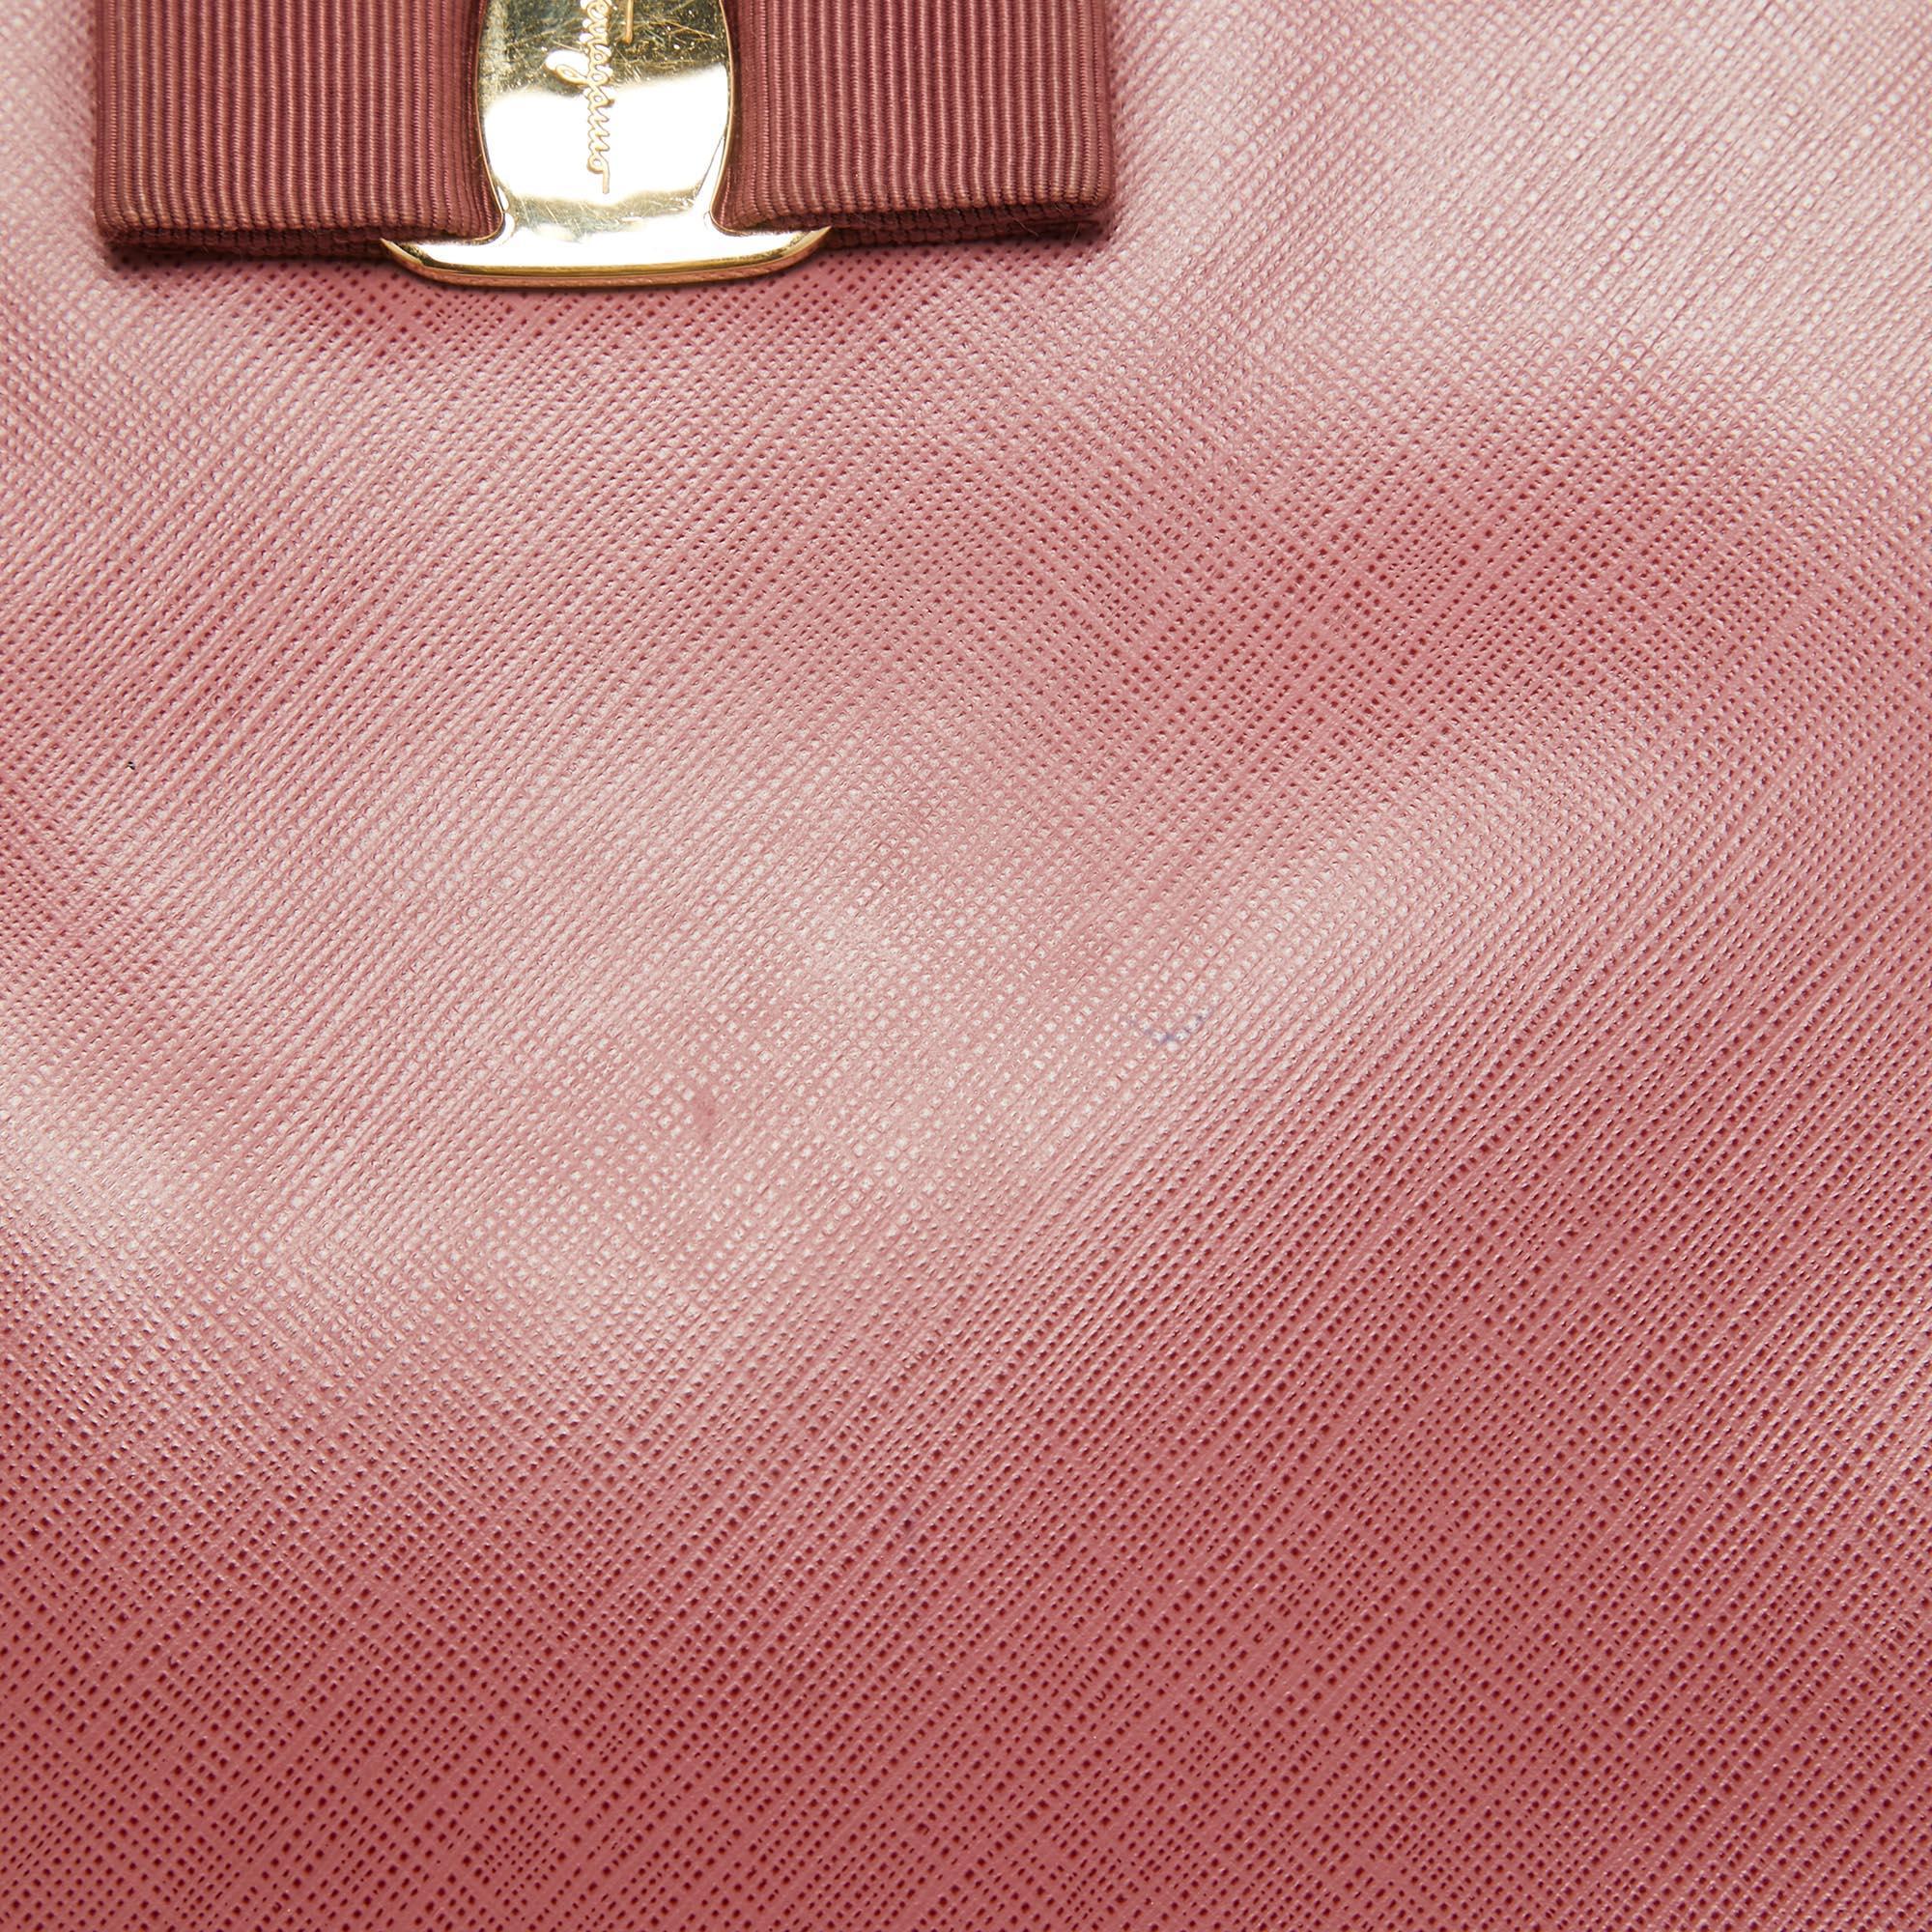 Salvatore Ferragamo Dark Pink Leather Shoulder Bag For Sale 10